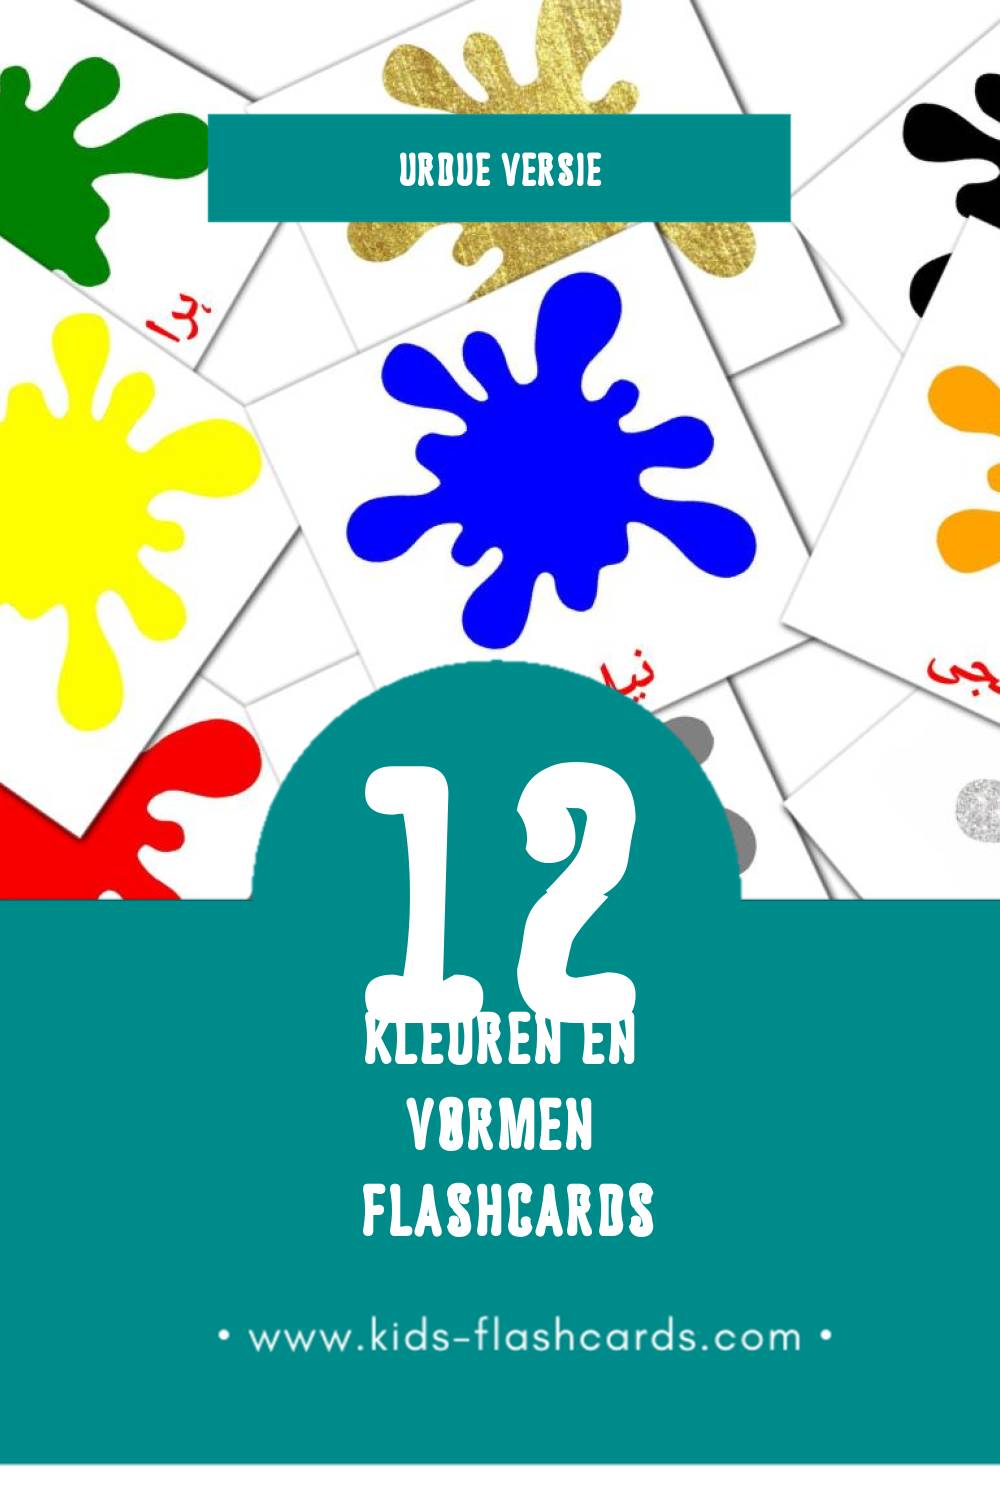 Visuele رنگ اور شکلیں۔ Flashcards voor Kleuters (12 kaarten in het Urdu)